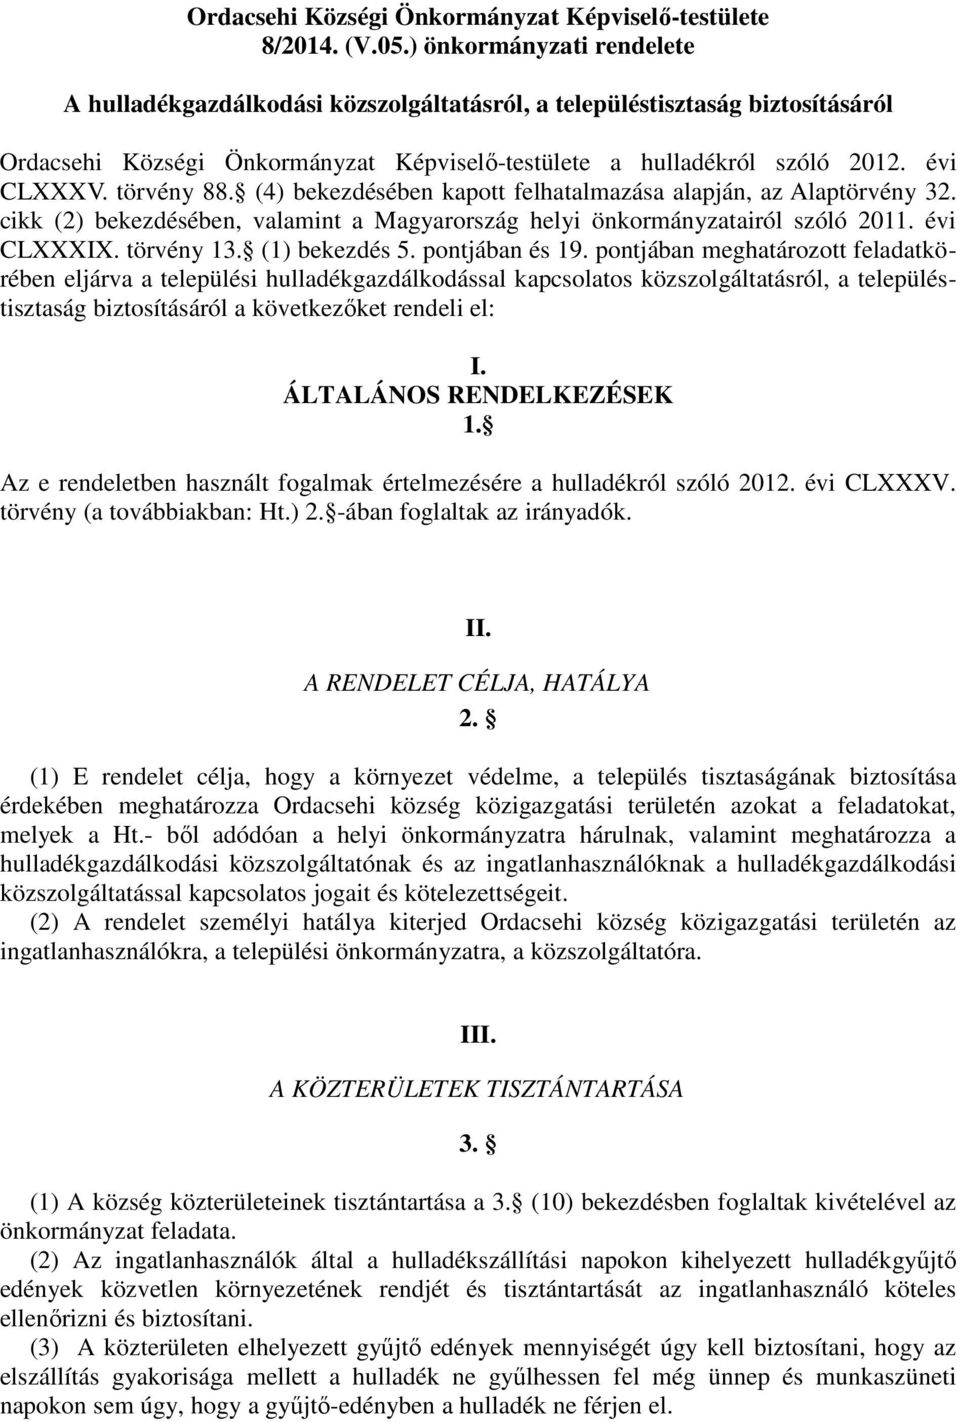 törvény 88. (4) bekezdésében kapott felhatalmazása alapján, az Alaptörvény 32. cikk (2) bekezdésében, valamint a Magyarország helyi önkormányzatairól szóló 2011. évi CLXXXIX. törvény 13.